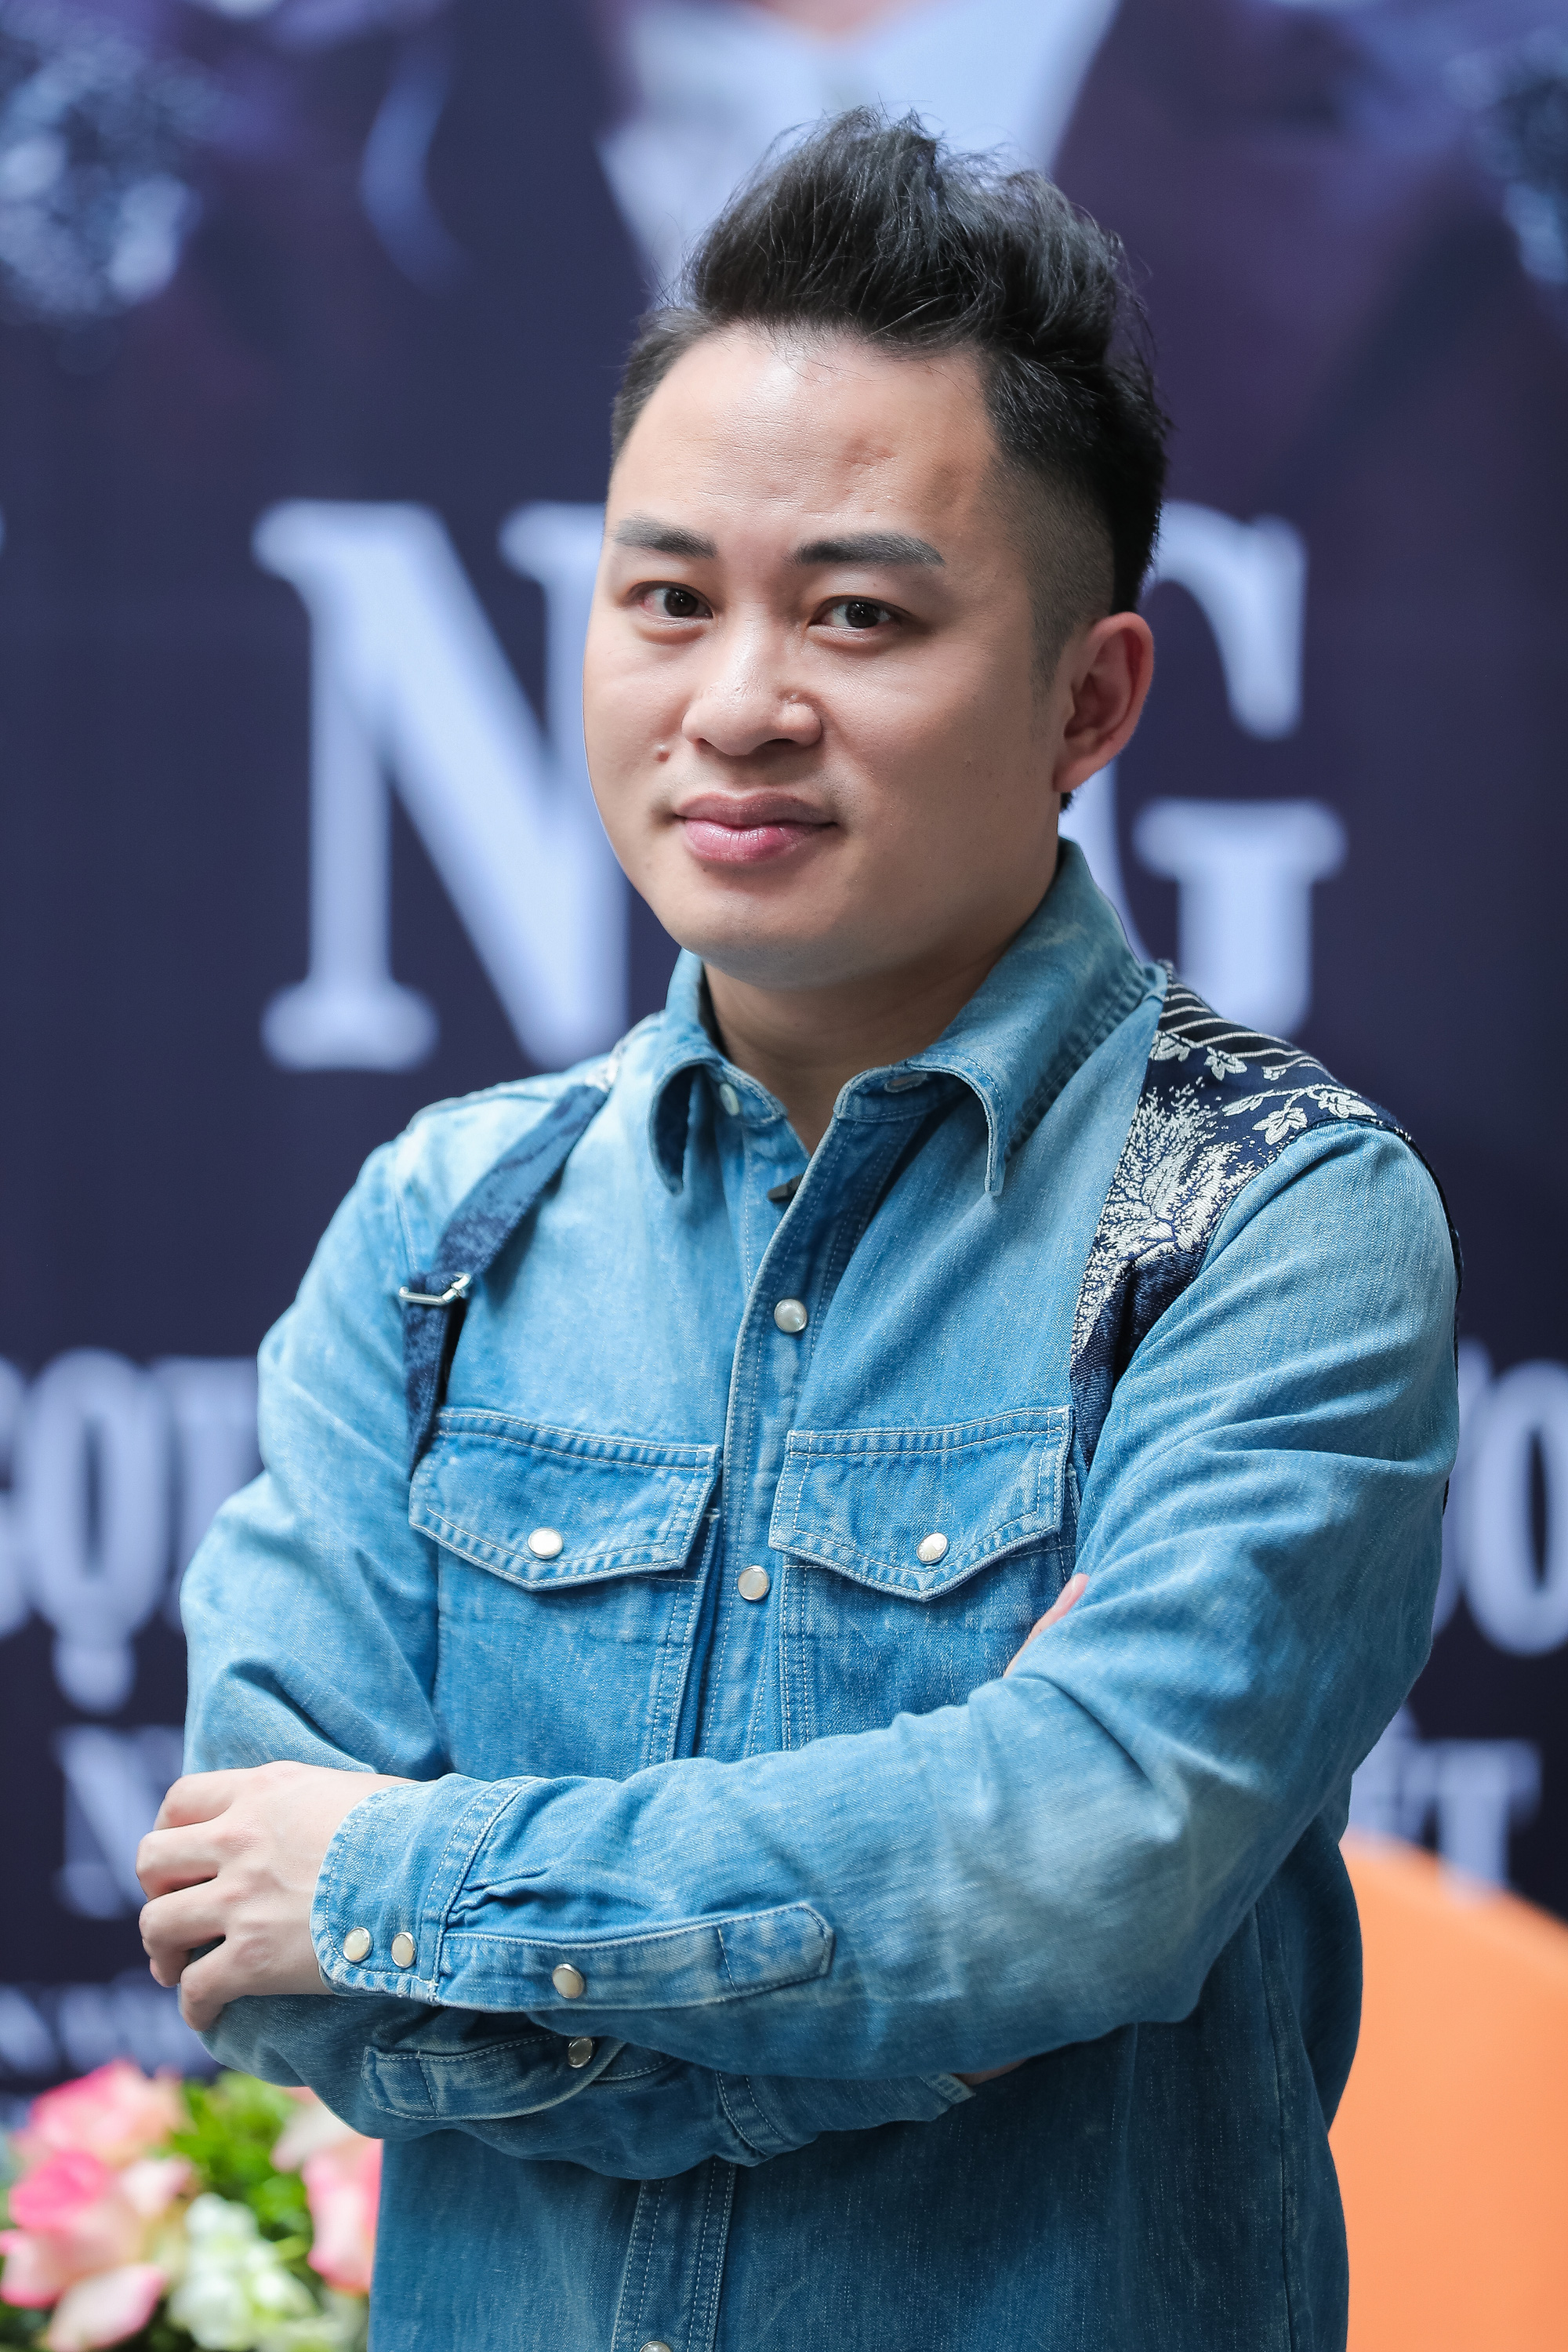 Ca sĩ Tùng Dương kêu gọi hơn 3 tỷ đồng giúp TP.HCM chống dịch, hành động đẹp nhận được vô vàn lời khen  - Ảnh 3.